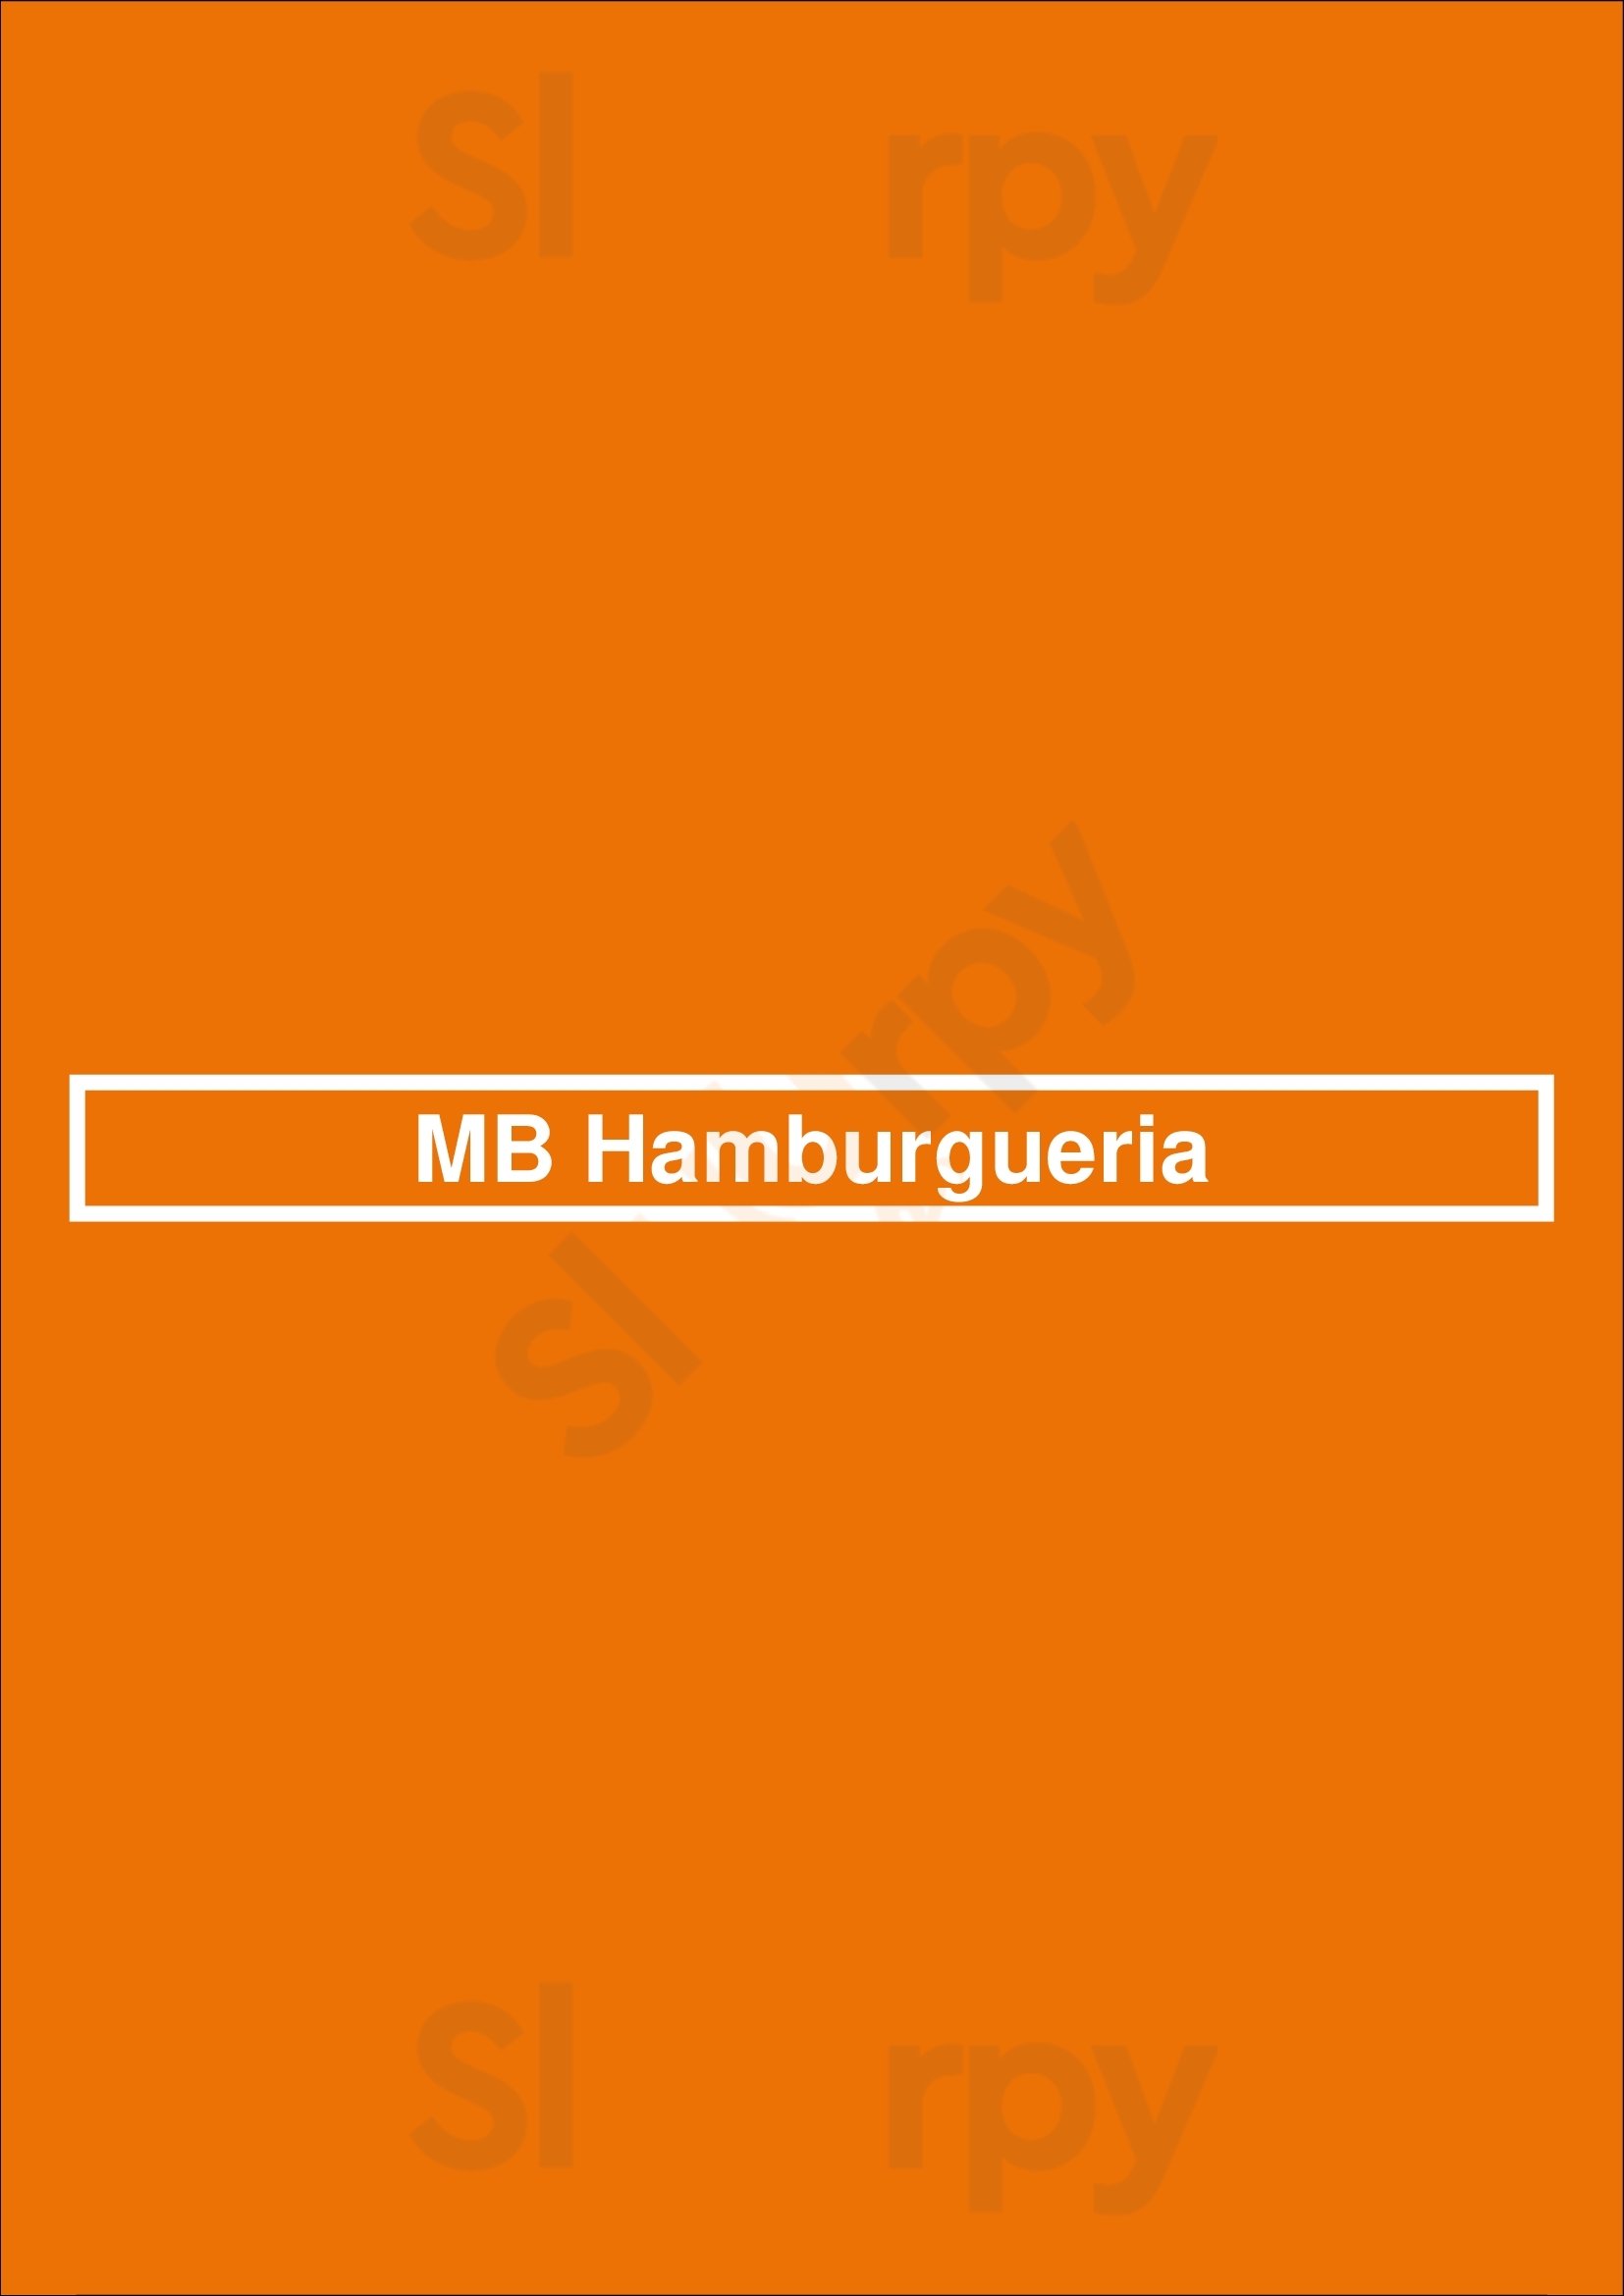 Mb Hamburgueria Porches Menu - 1